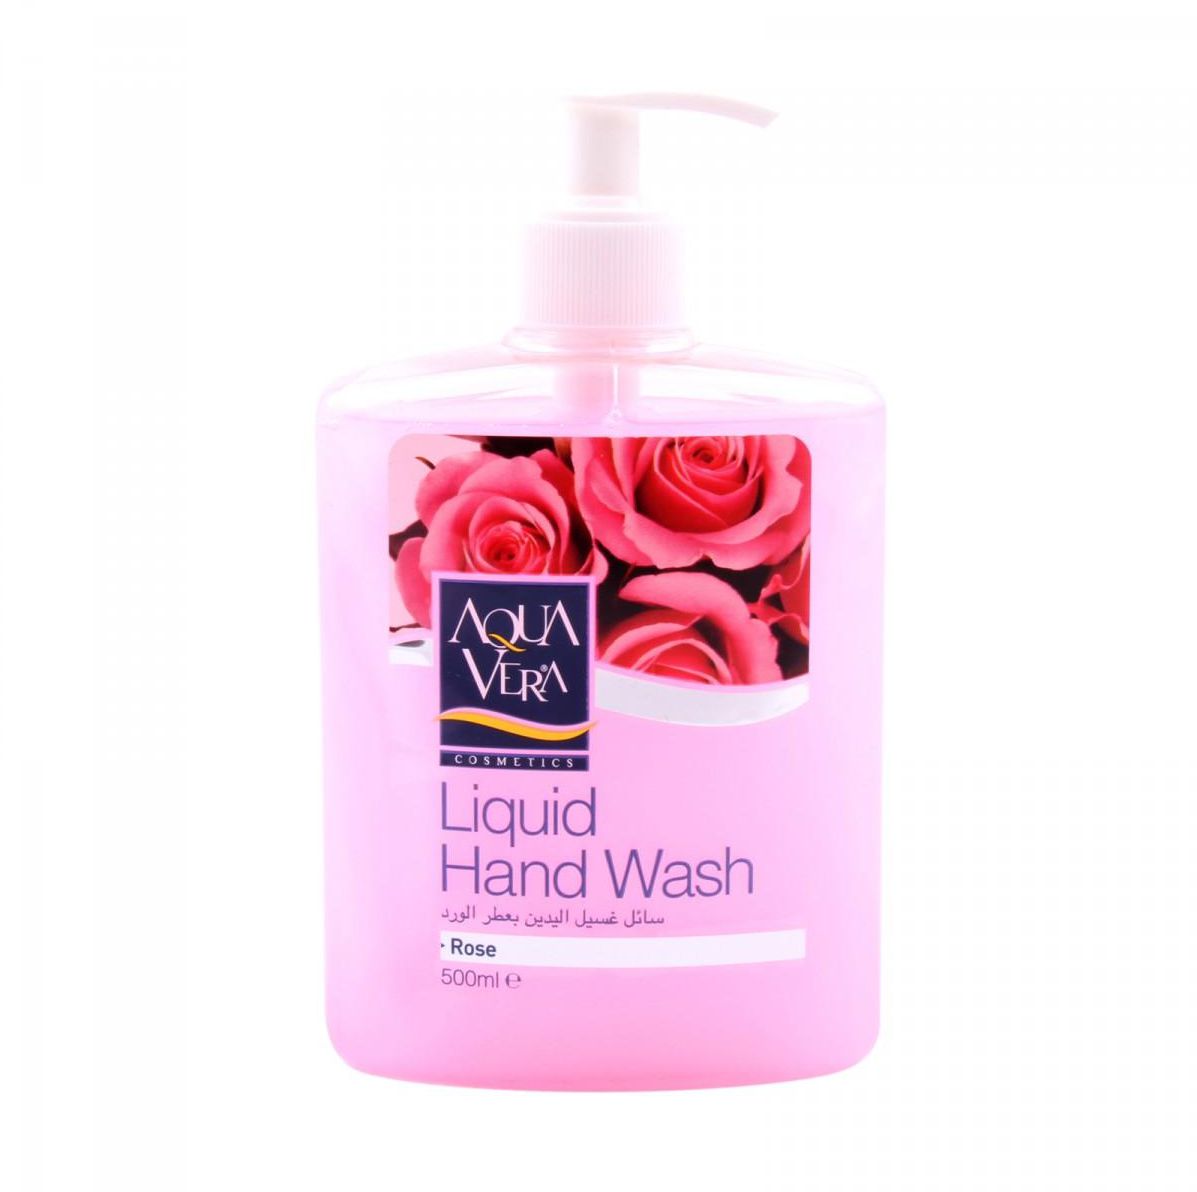 Aqua Vera Liquid Hand Wash With Rose 500ml